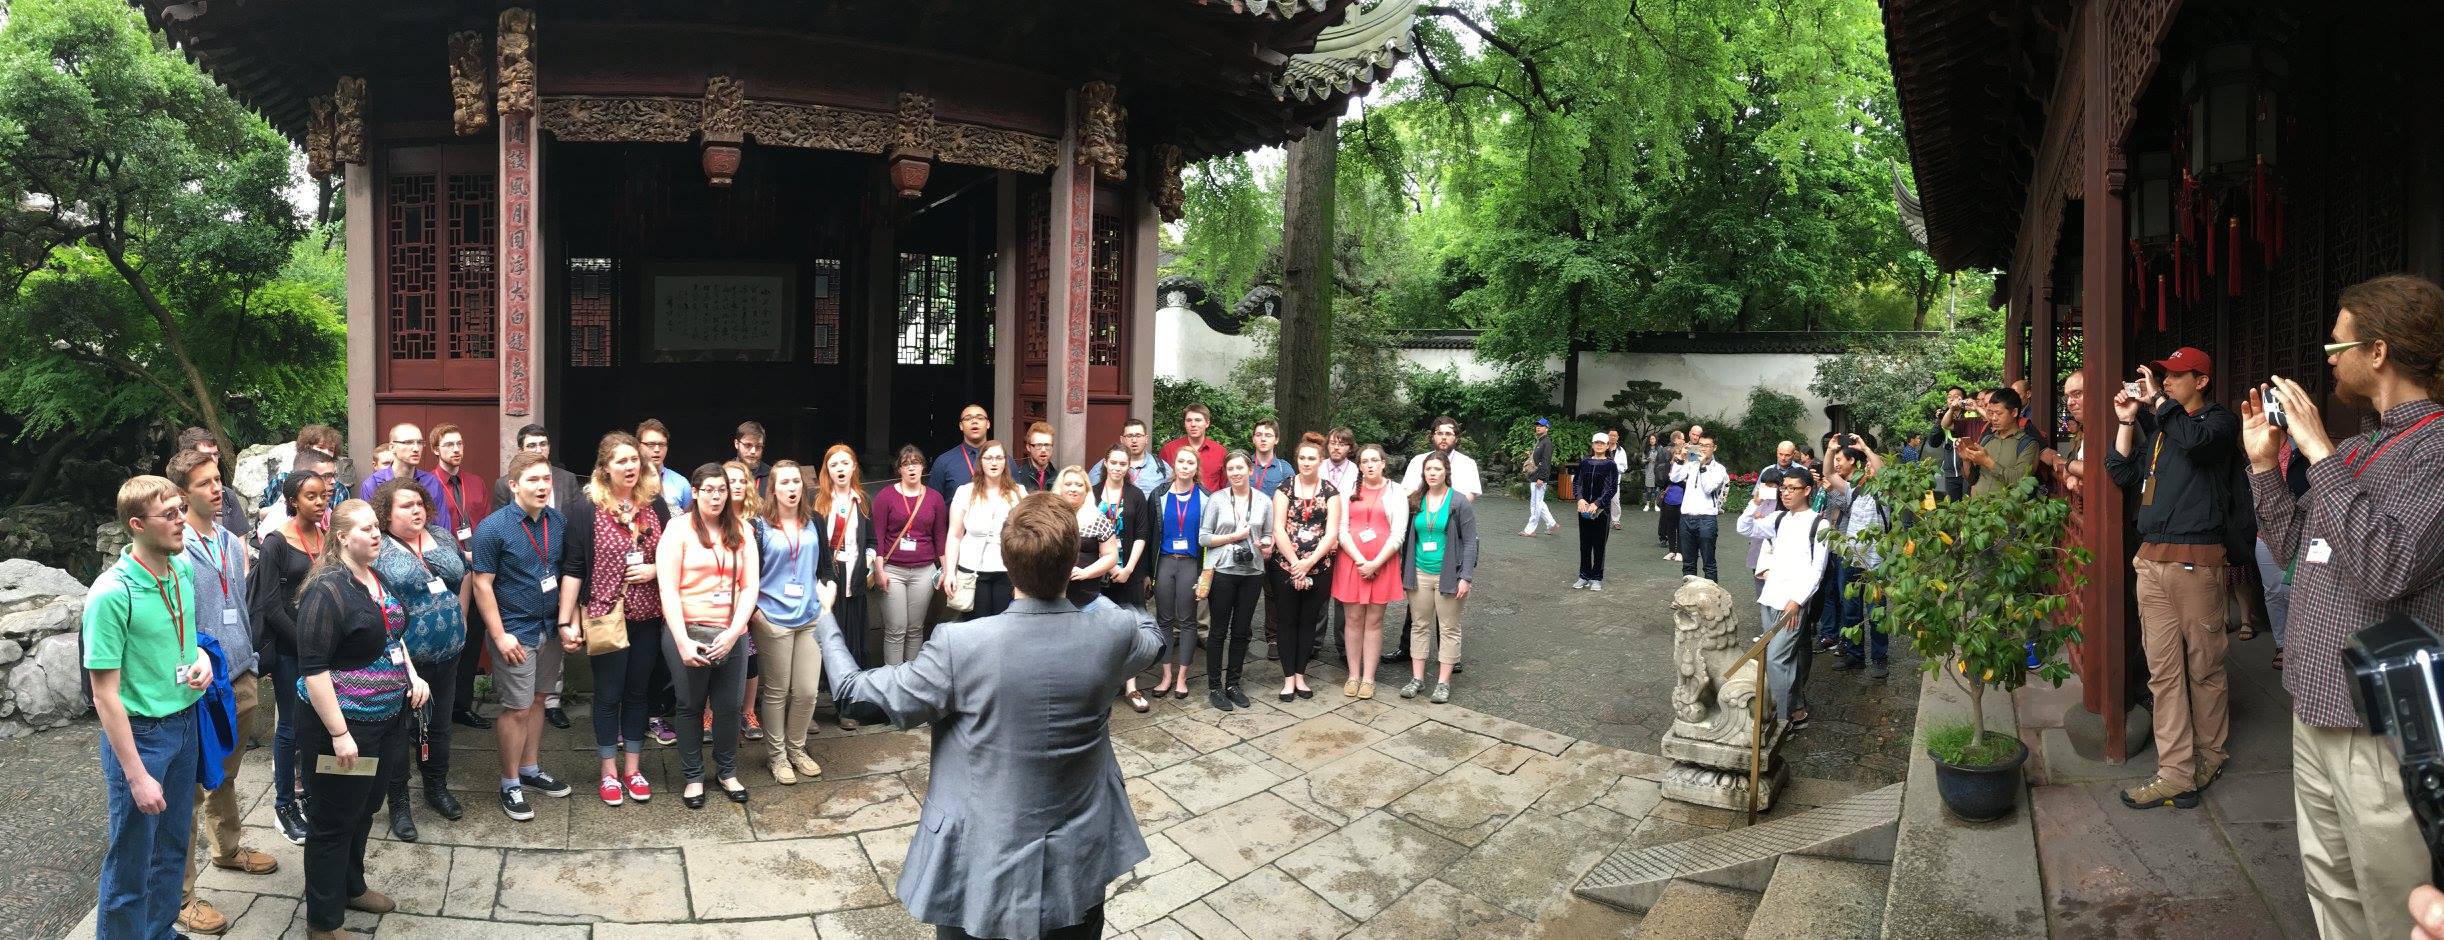 The choir performs "Mo Li Hua" at the Yu Garden.